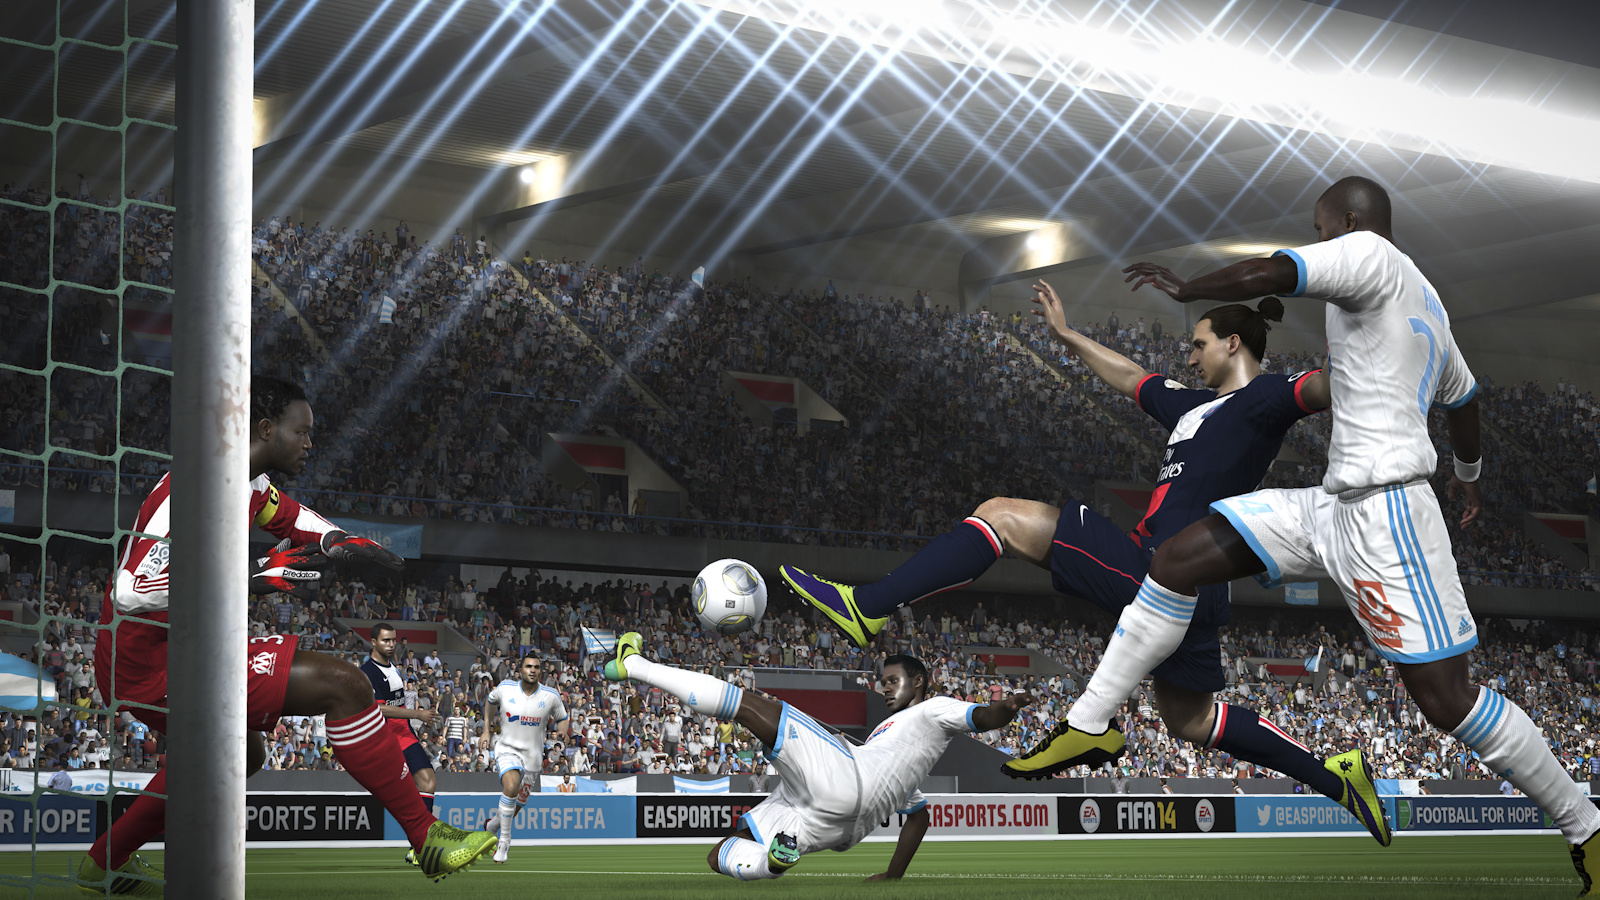 PS4 at Eurogamer: FIFA 14 PlayStation 4 Gameplay 